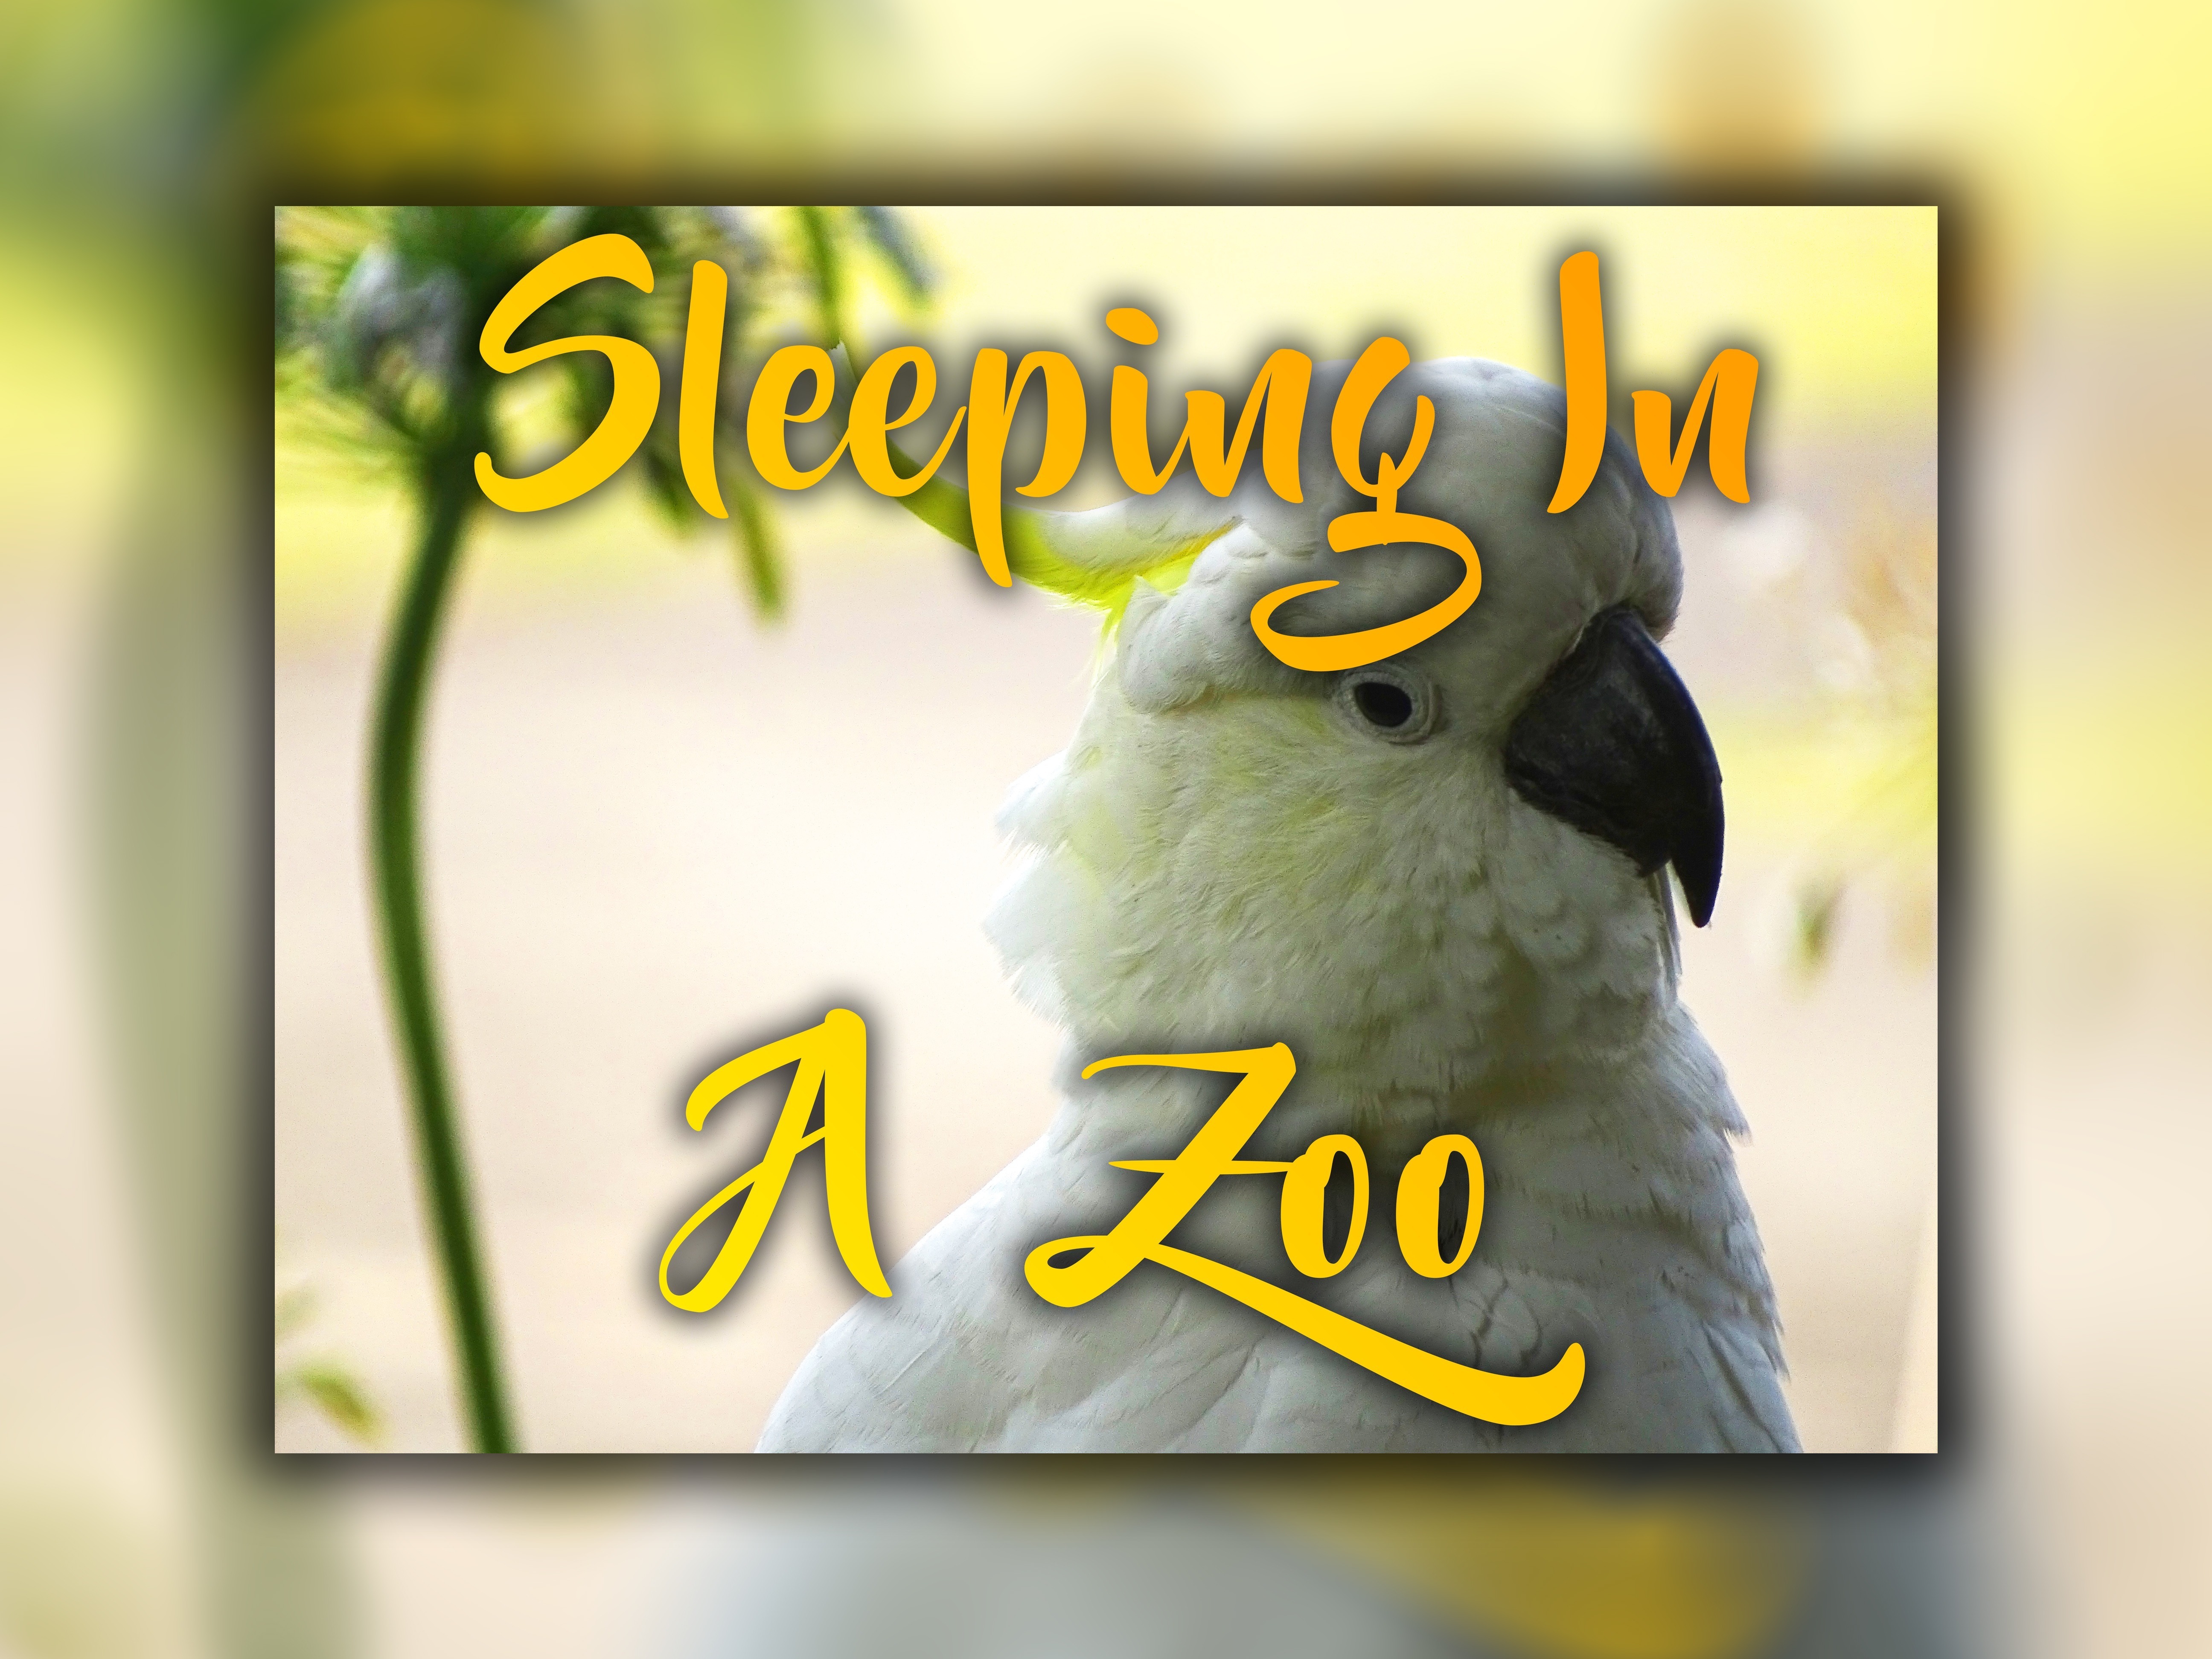 Sleeping in a zoo